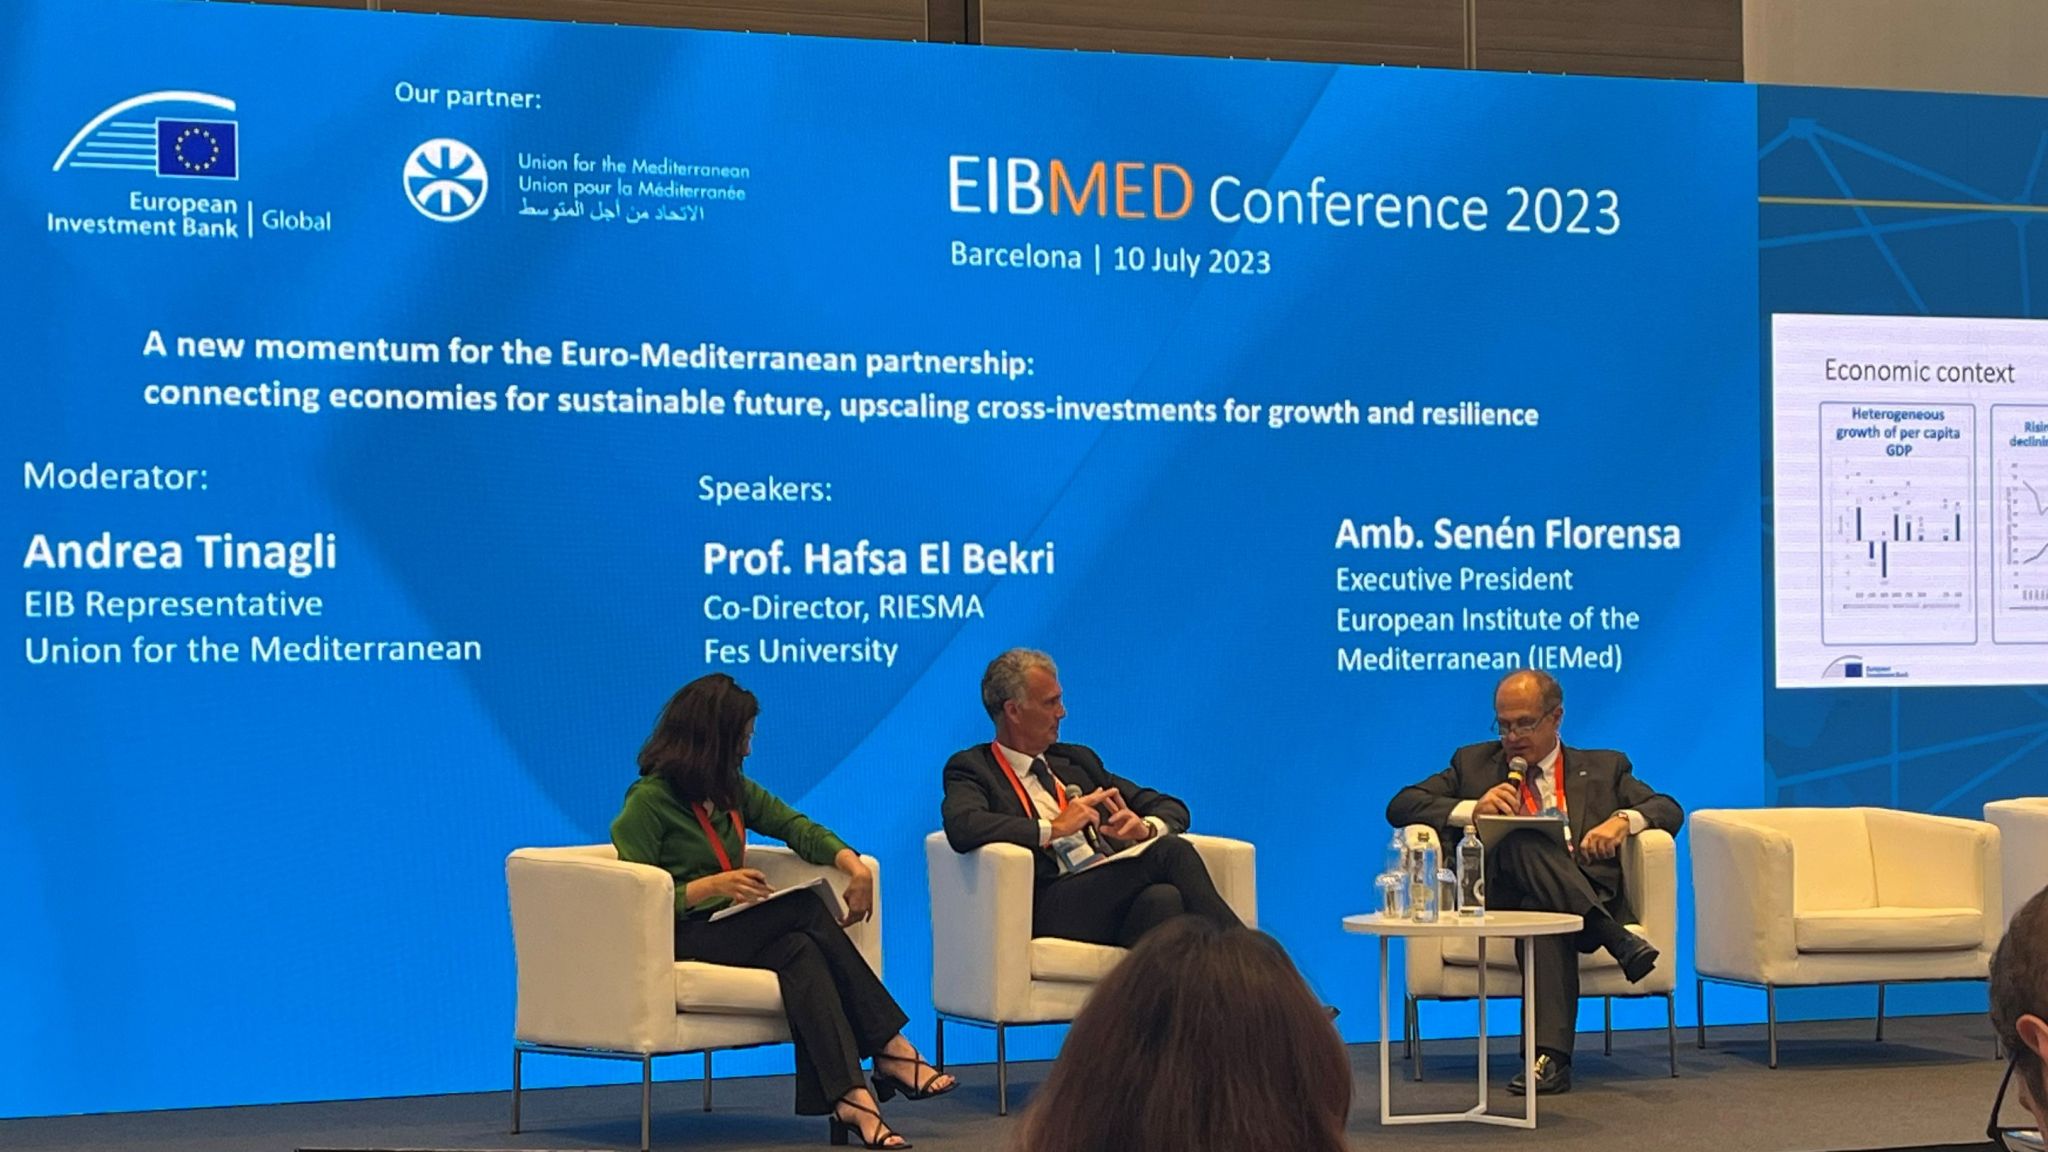 La Universidad Euromed presenta en Barcelona durante la conferencia EIBMED edición 2023